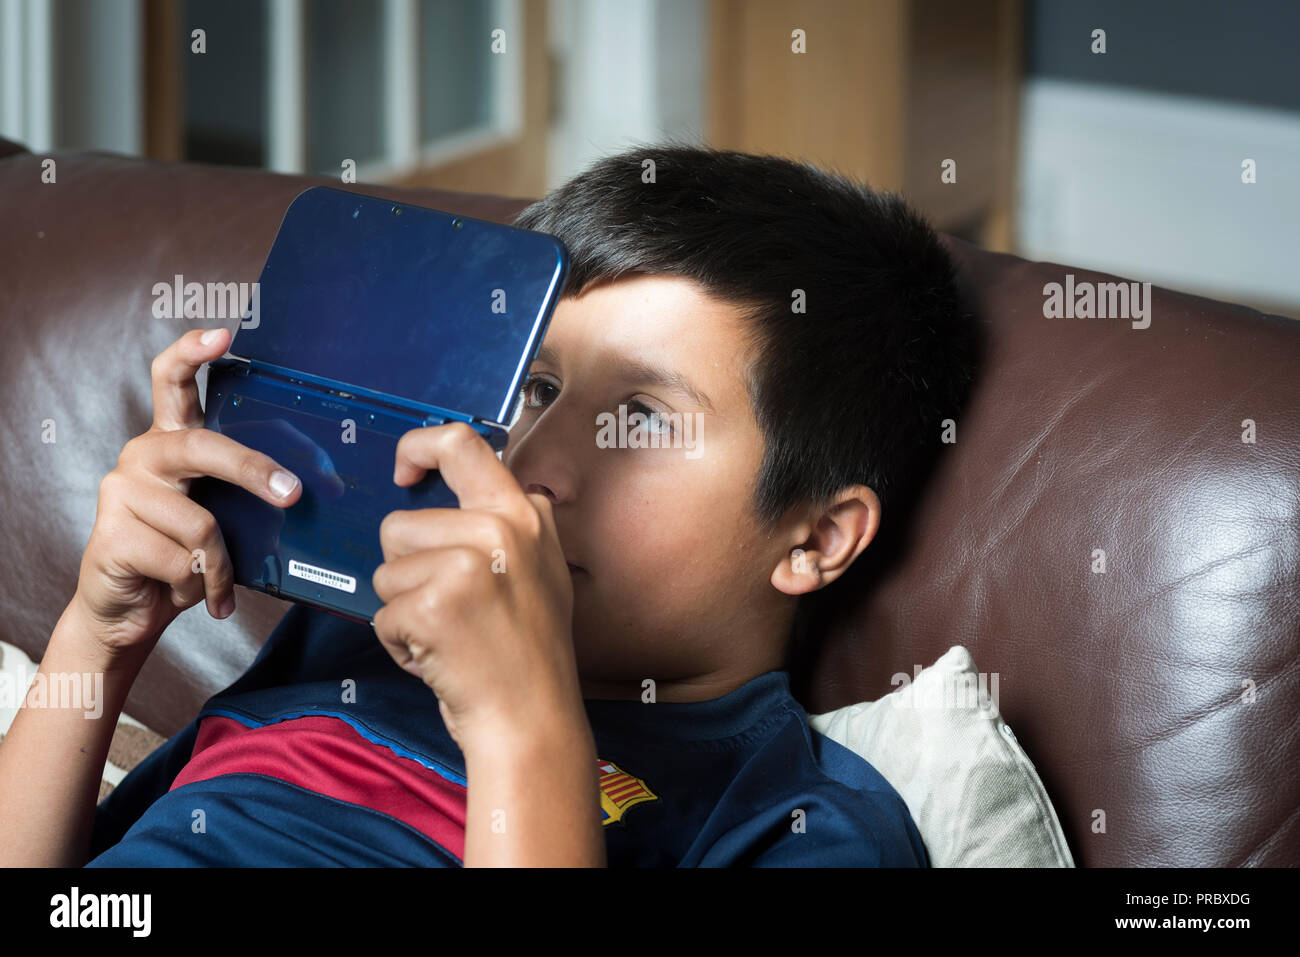 Deviazione oculare.Il gioco eccessivo e electonic gadget uso potrebbe rendere i bambini cross-eyed-boy gioca computer gioco su console di gioco portatili Foto Stock